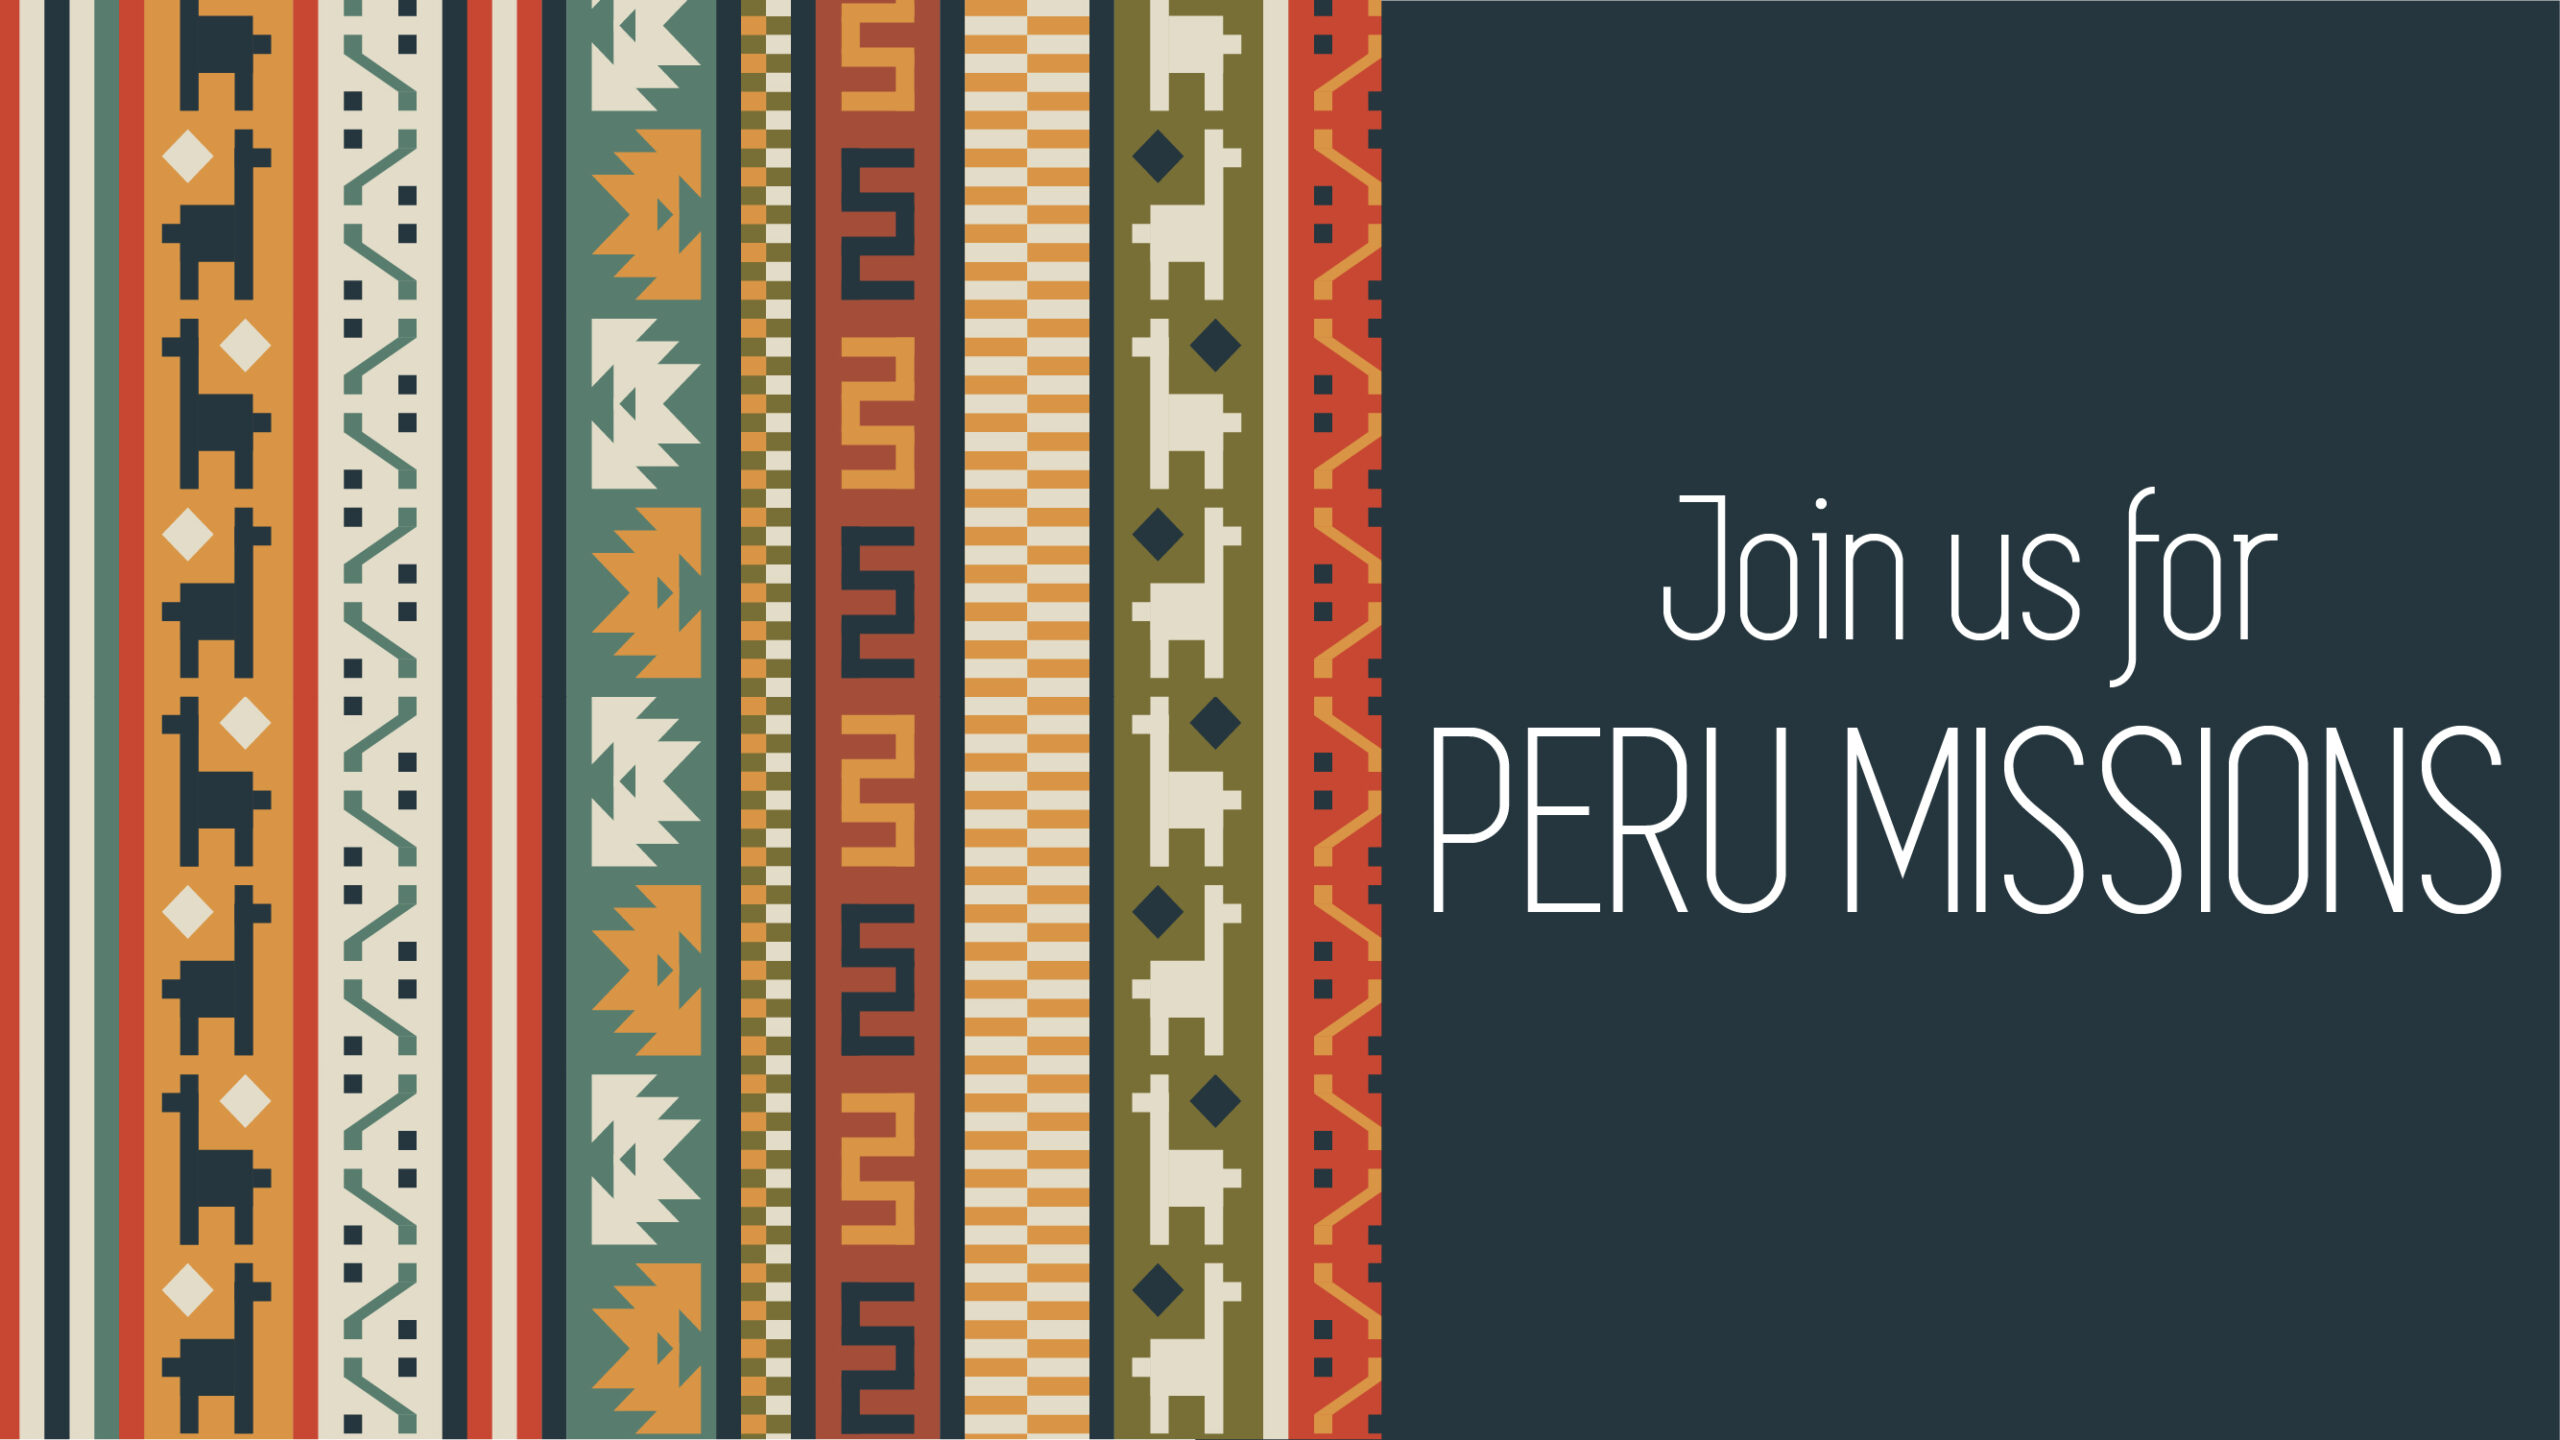 Peru Missions_web